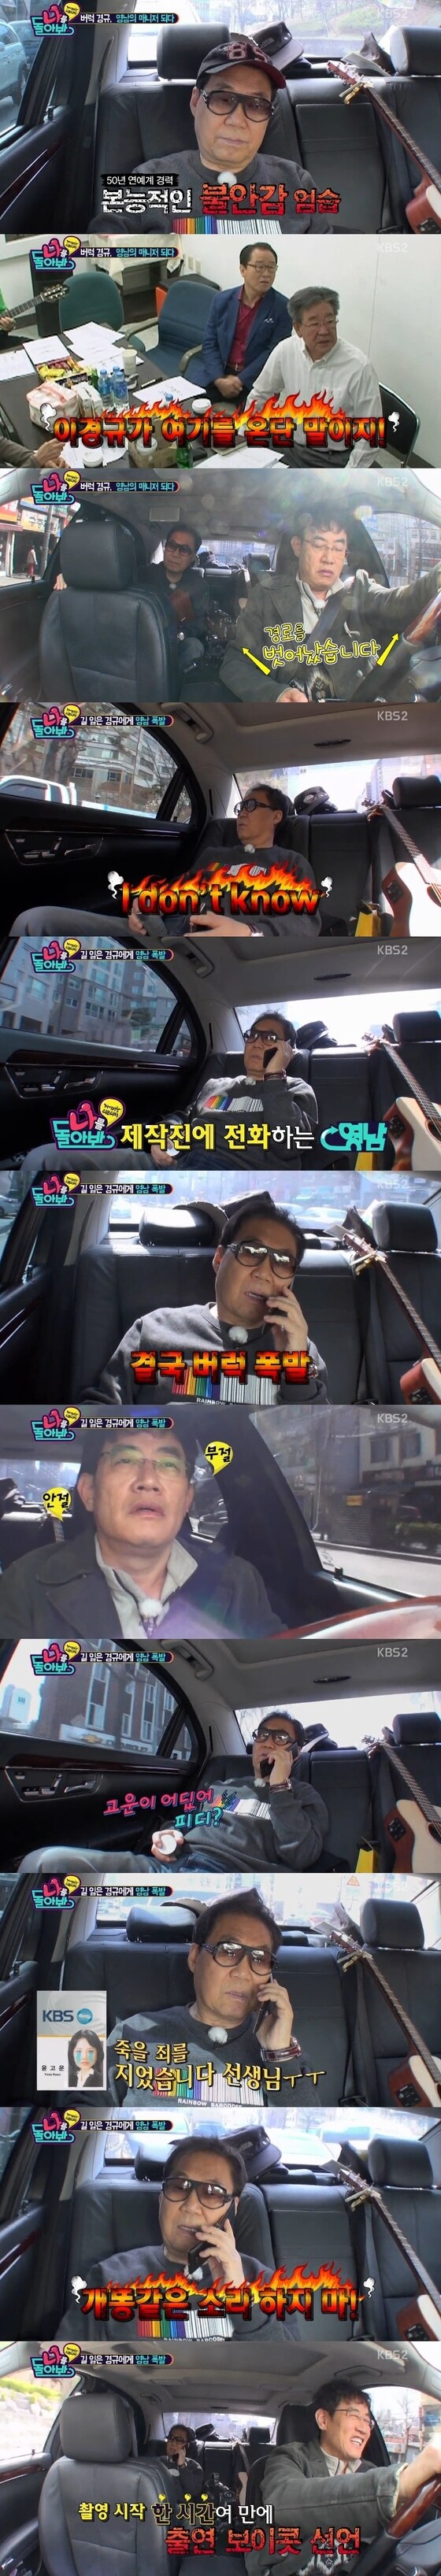 '나를 돌아봐' 조영남이 이경규에게 분노를 표출했다. © 뉴스1스포츠 / KBS2 ´나를 돌아봐´ 캡처